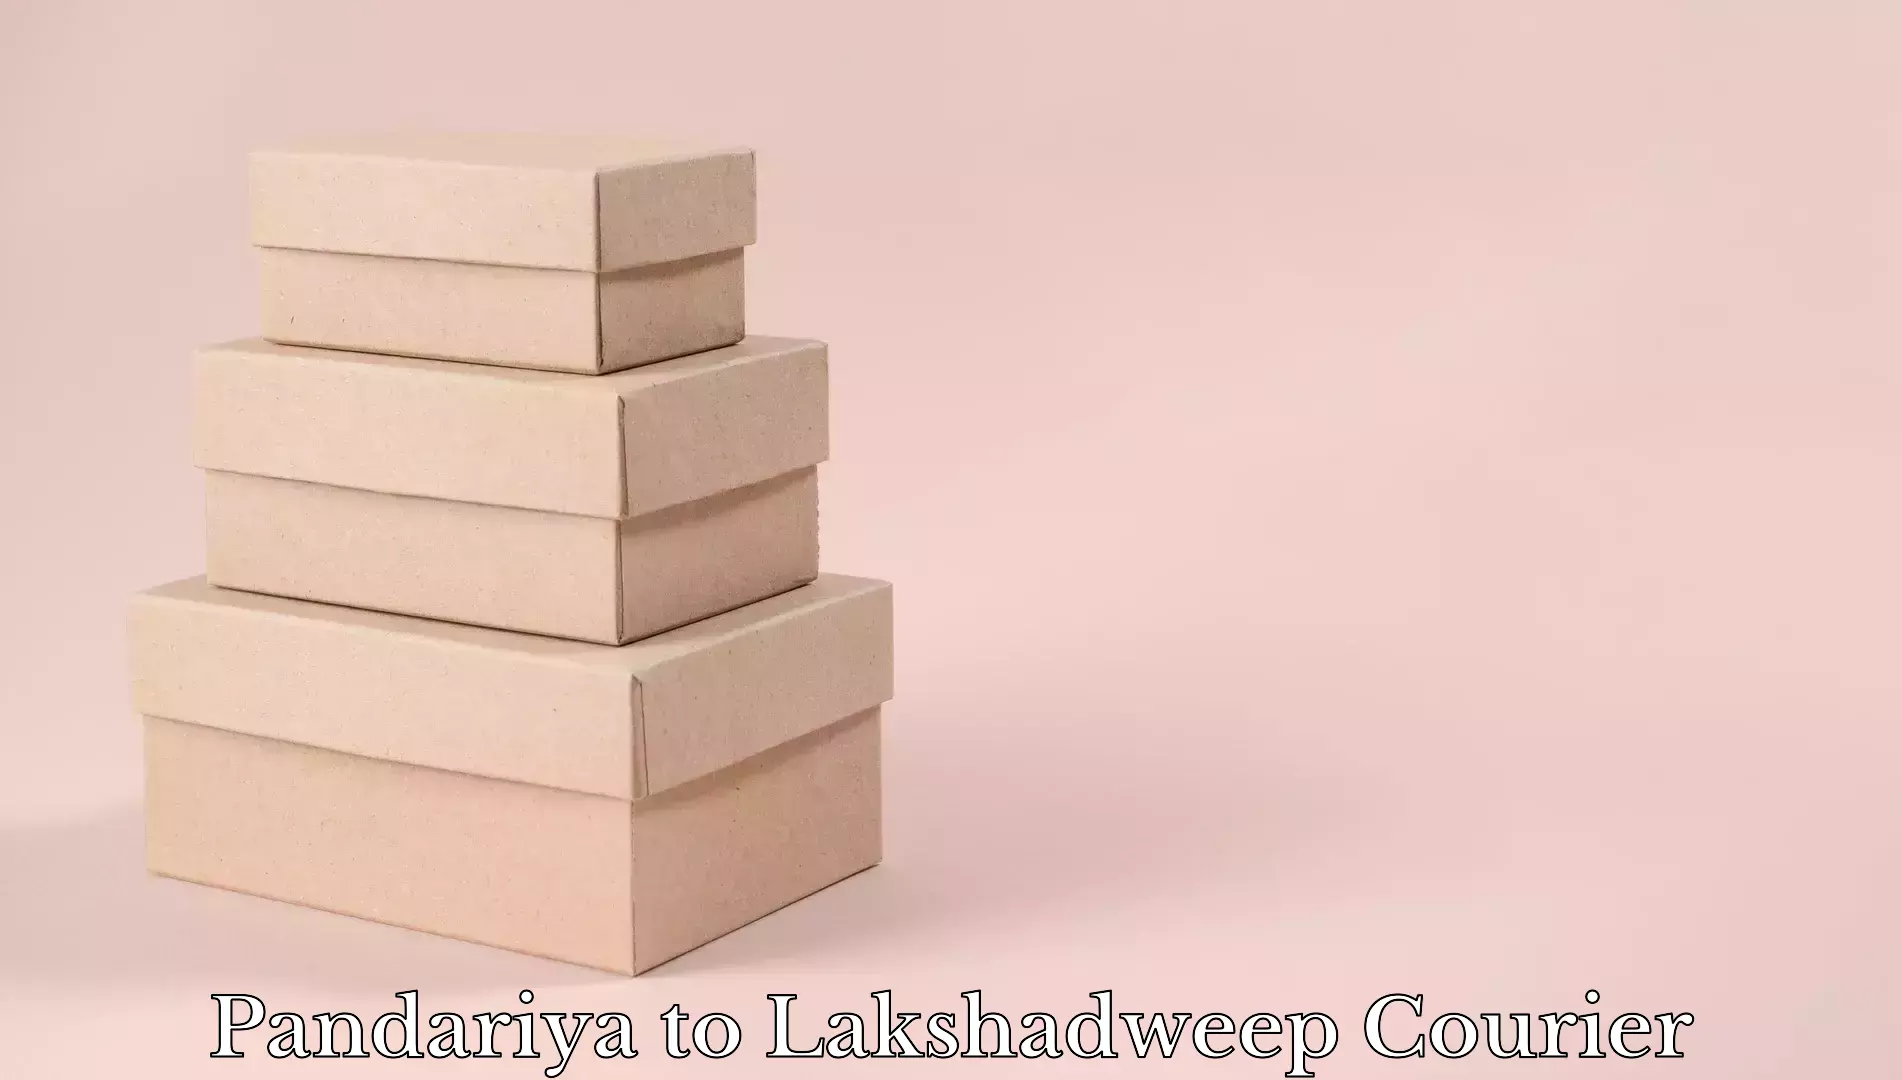 Luggage delivery providers Pandariya to Lakshadweep